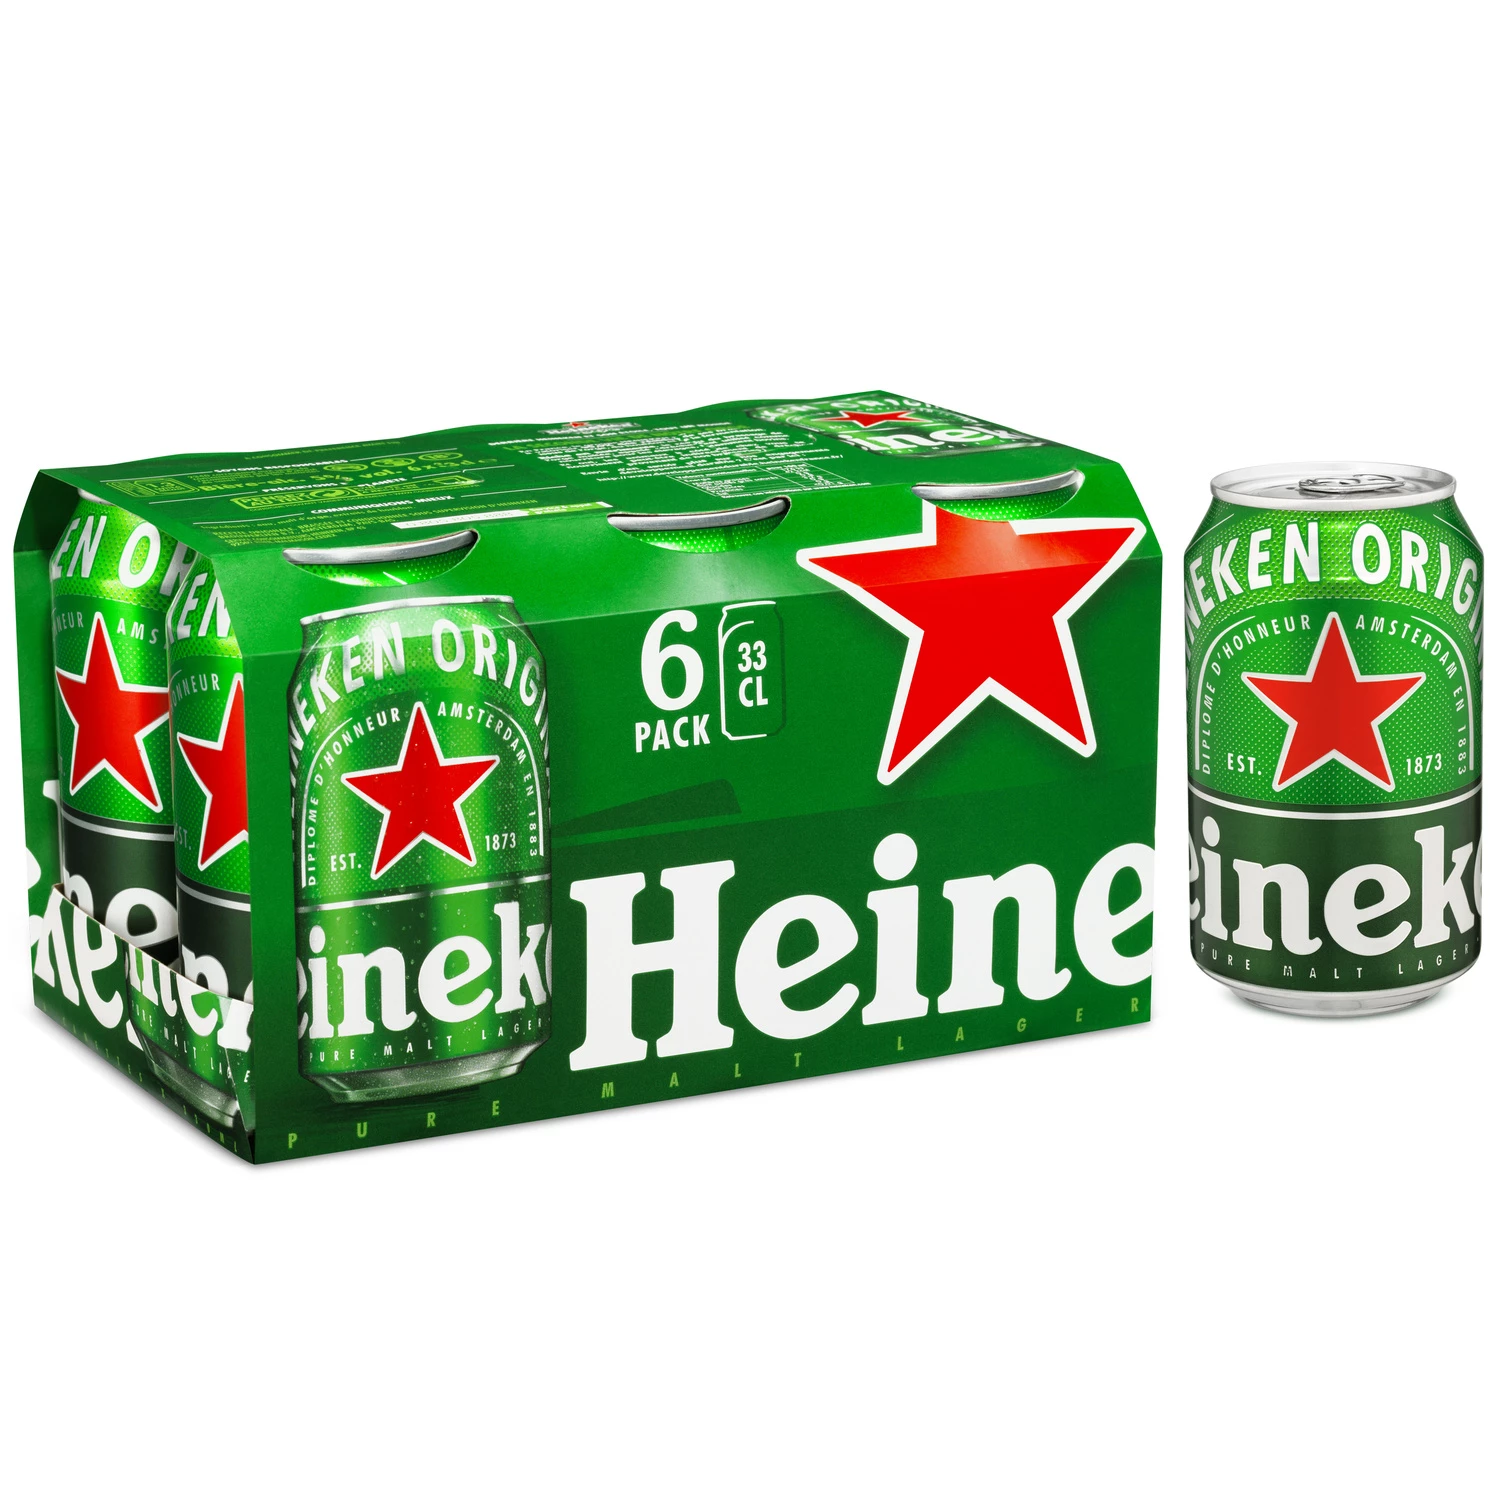 Blonde beer, 6x33cl - HEINEKEN